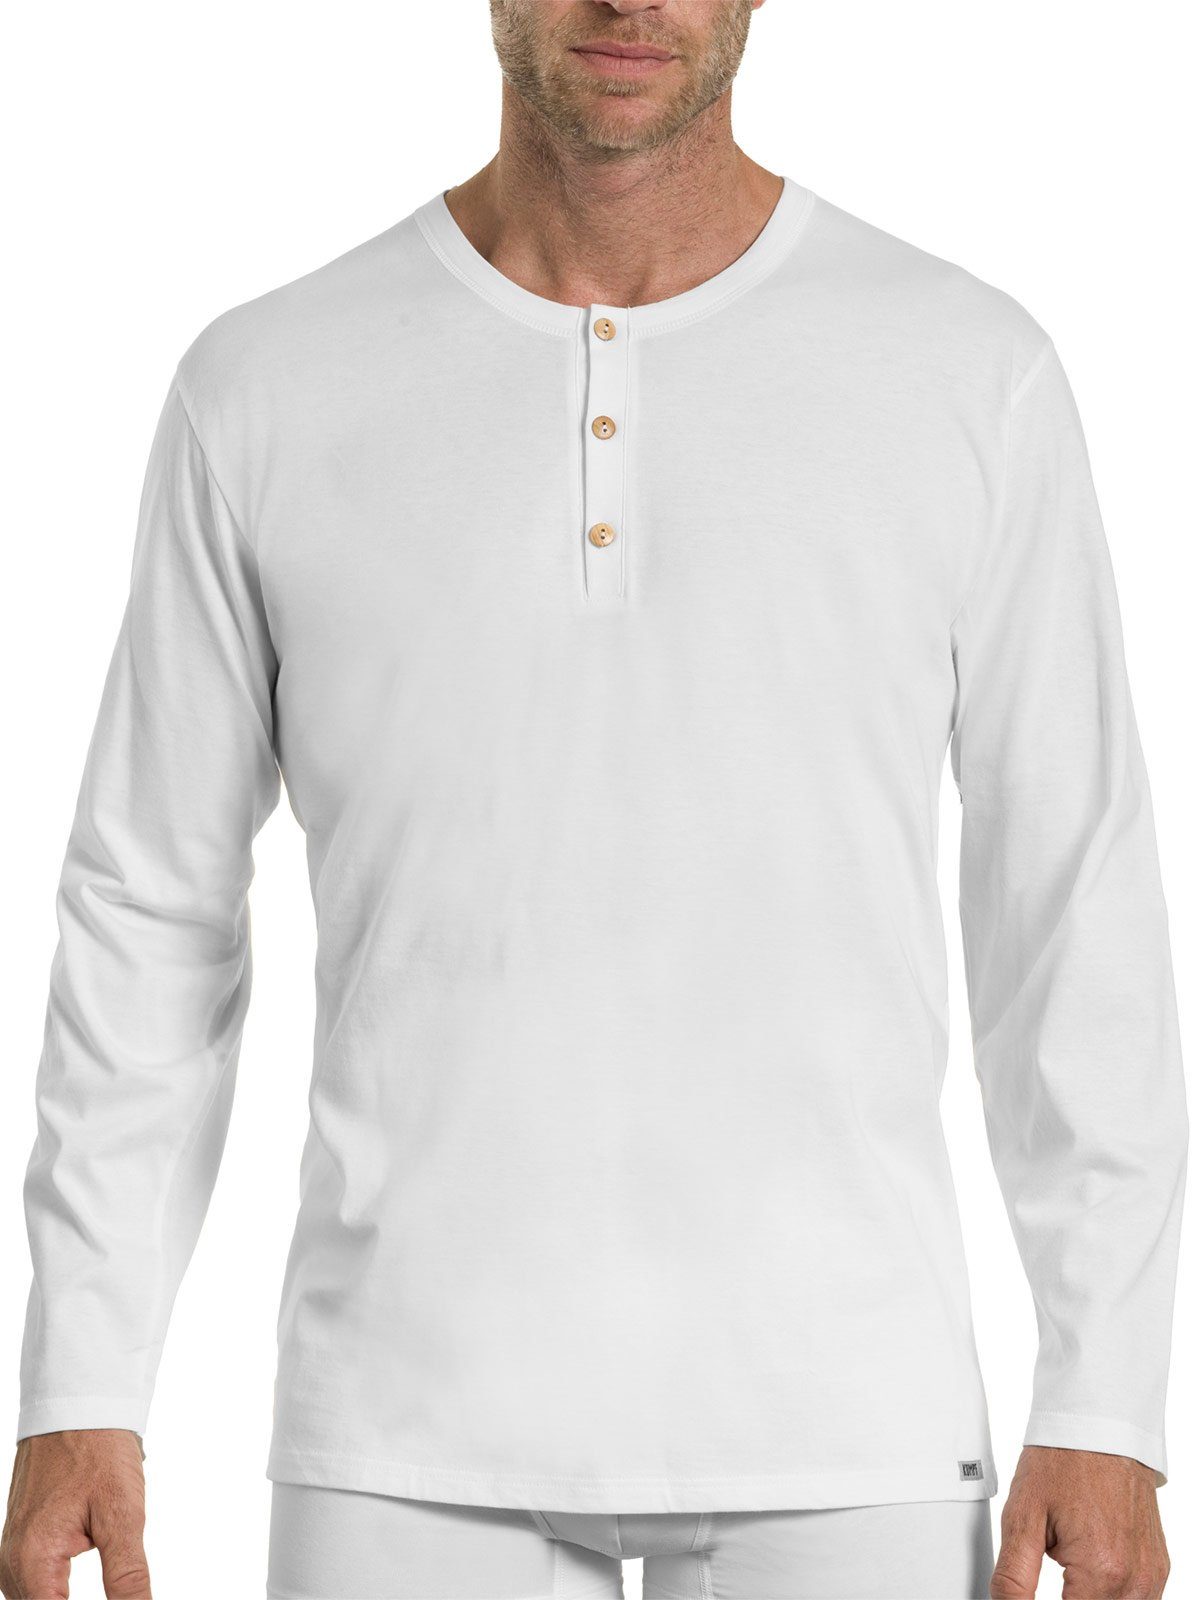 langarm Bio 1-St) Markenqualität Shirt KUMPF hohe Herren weiss Cotton Unterhemd (Stück,